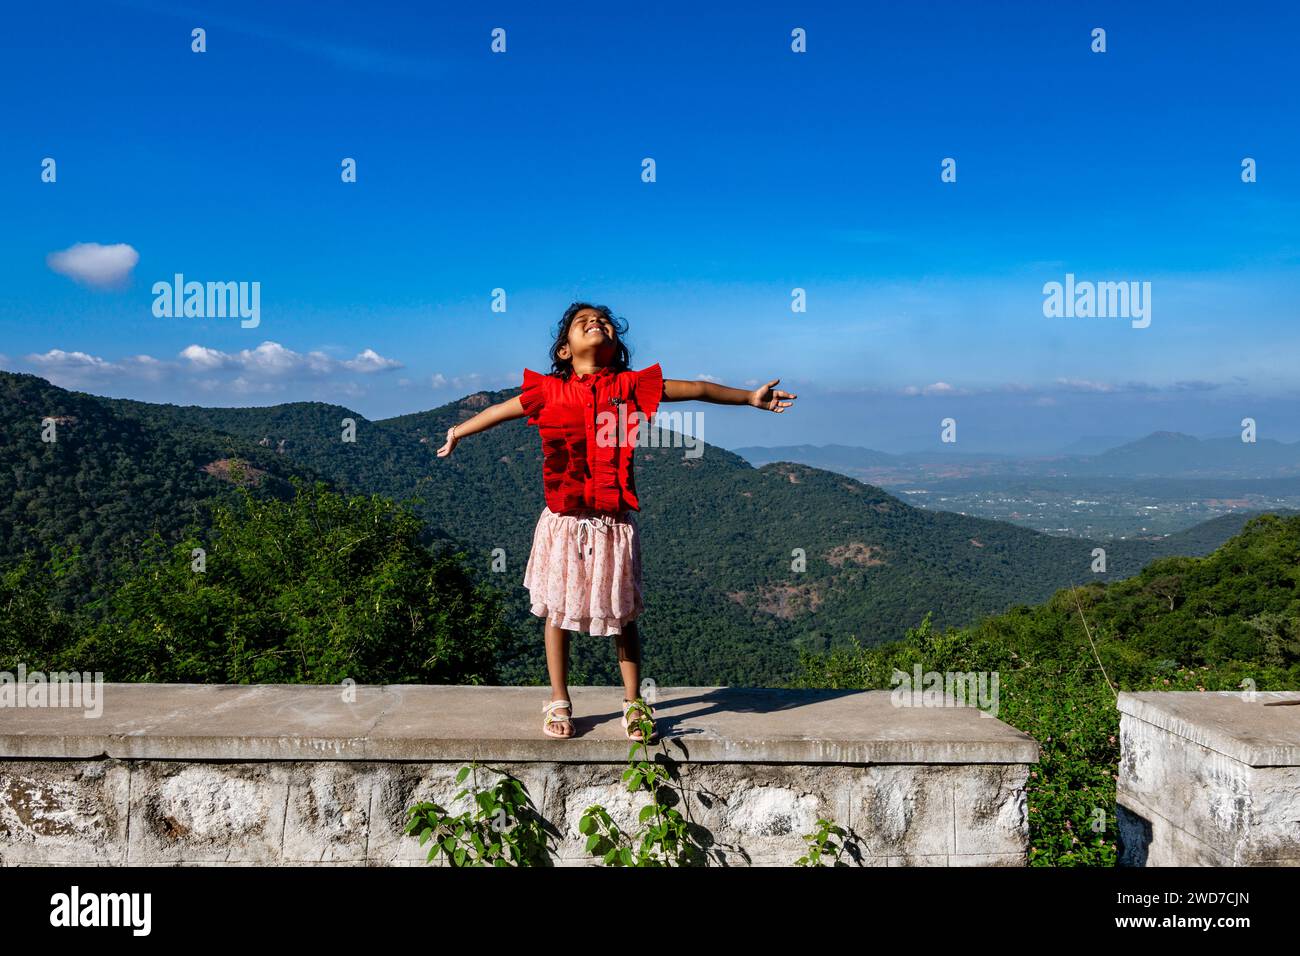 Ein kleines Kind steht triumphierend auf einem Berggipfel, die Arme zum Himmel gestreckt und die Welt als ihre eigene bezeichnet Stockfoto